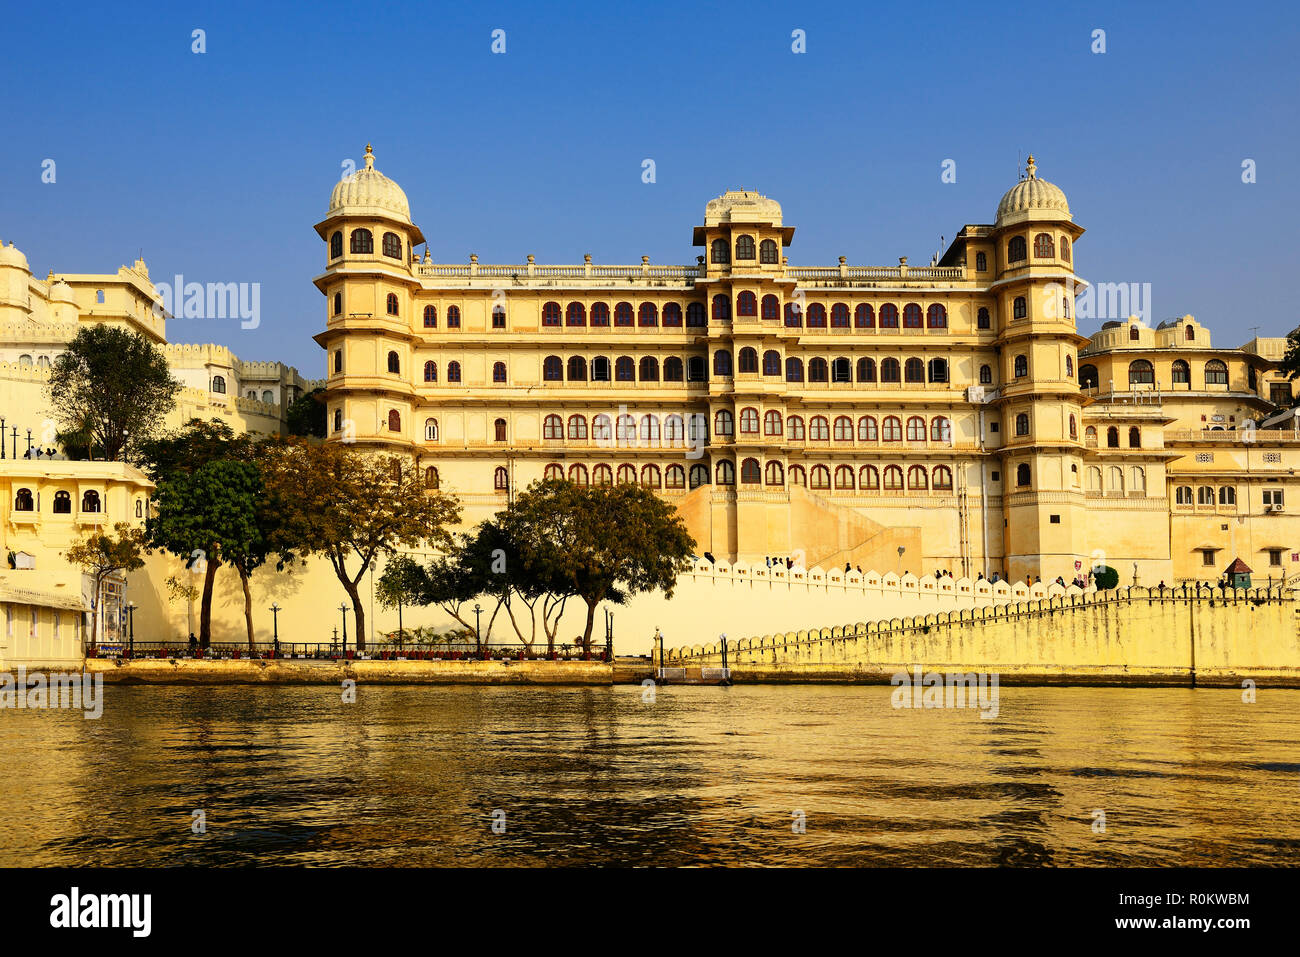 City Palace on Lake Pichola, Udaipur, Rajasthan, India Stock Photo